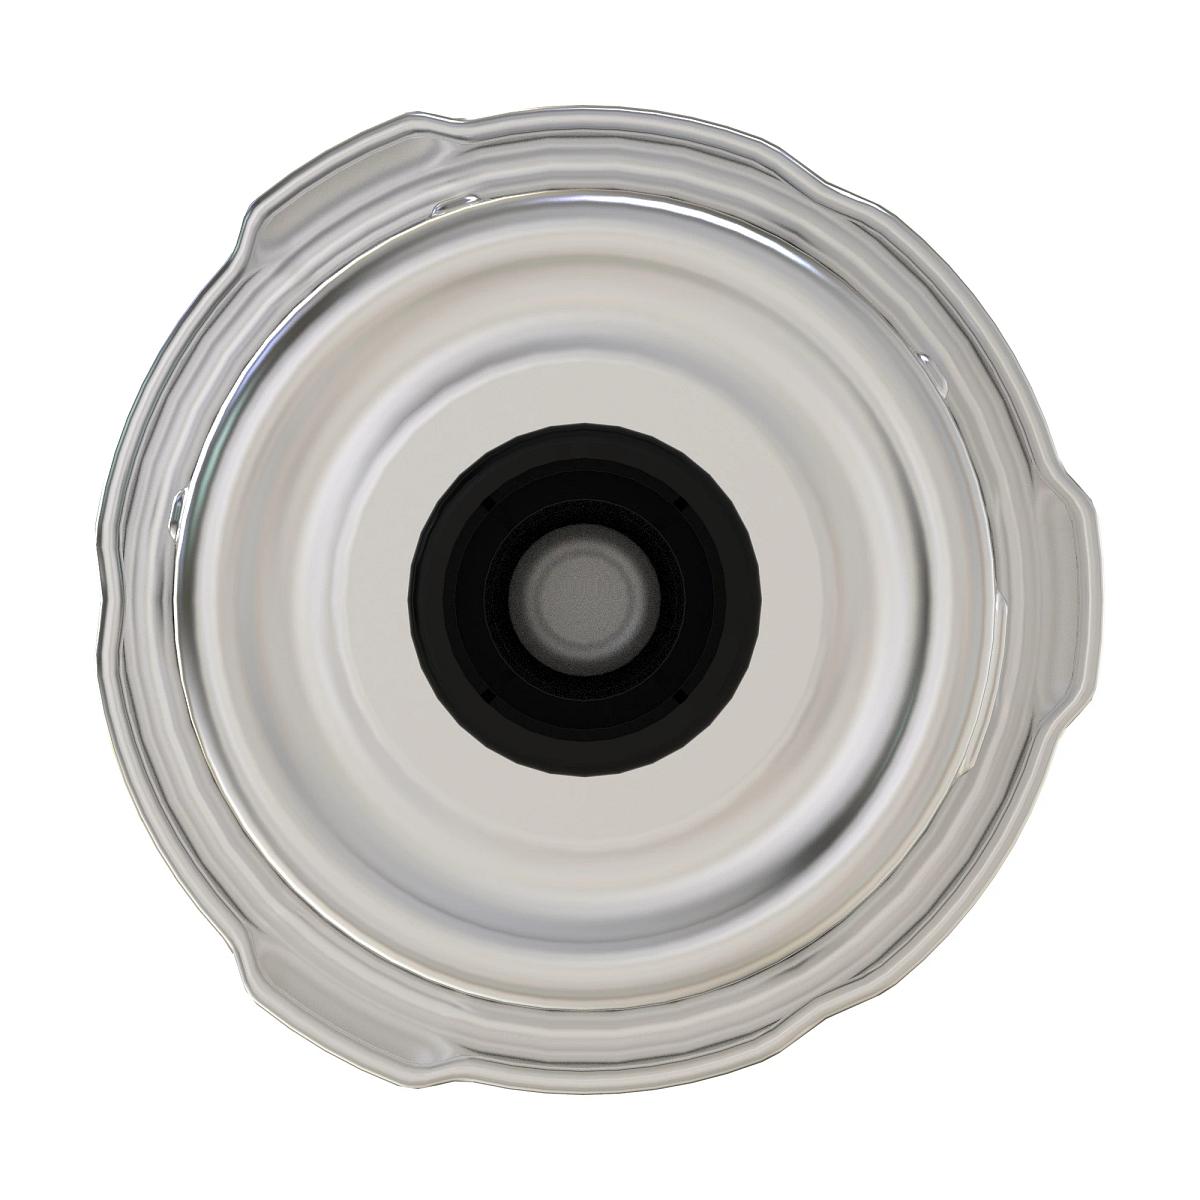 Support filtre gasoil complet avec filtres - filtre gasoil complet double  pour john deere - fiat 4659288 - FIAT - JOHN DEERE 